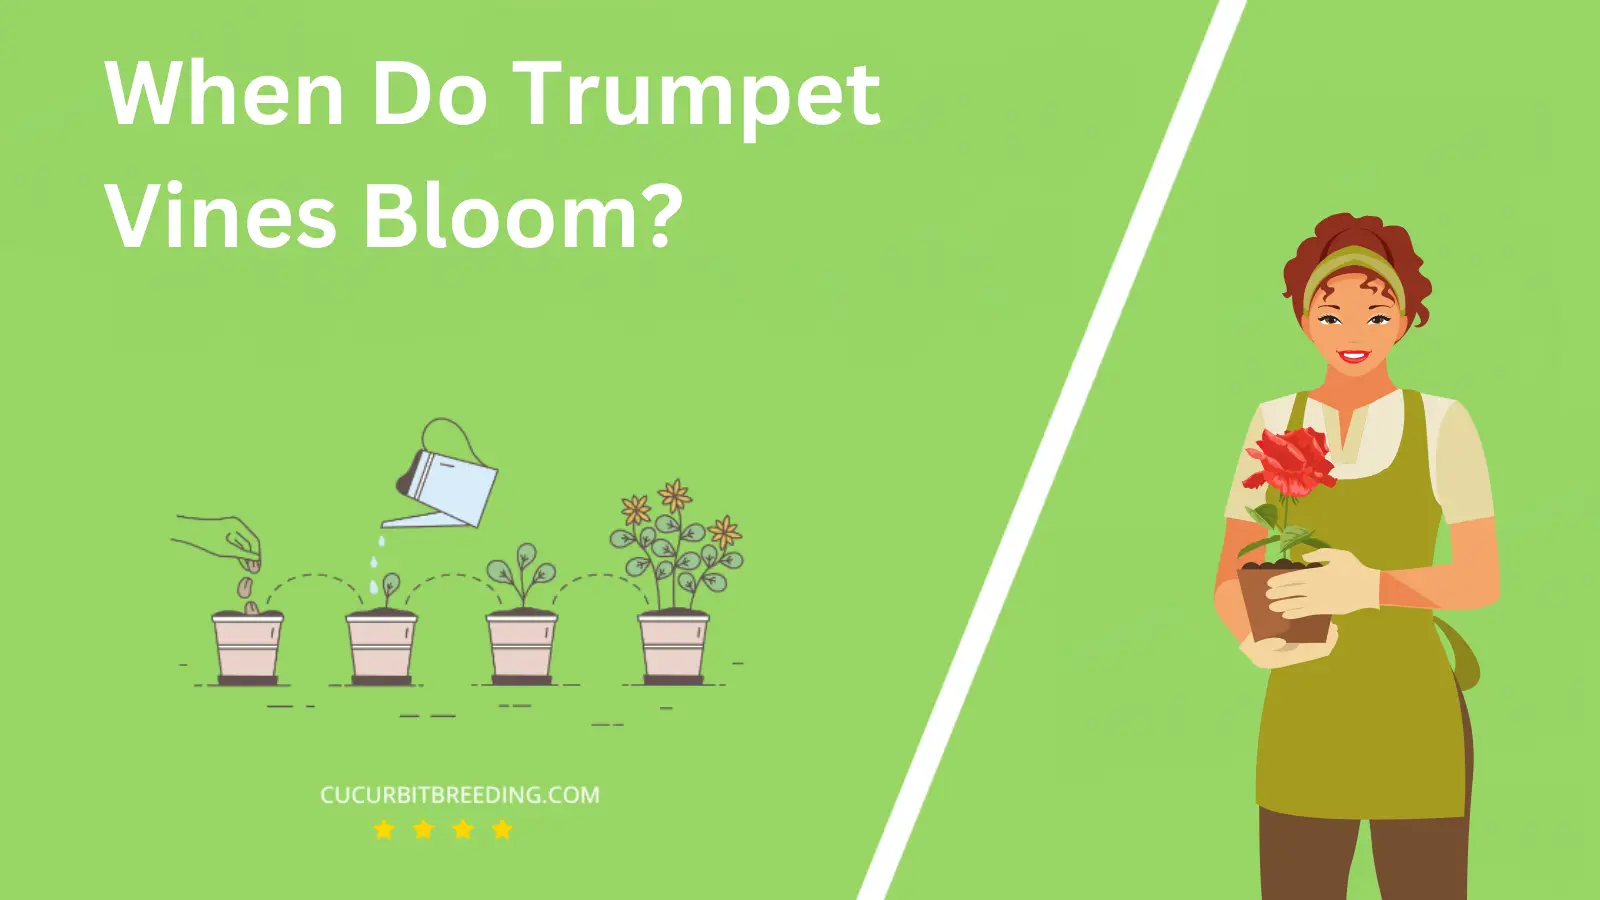 When Do Trumpet Vines Bloom?